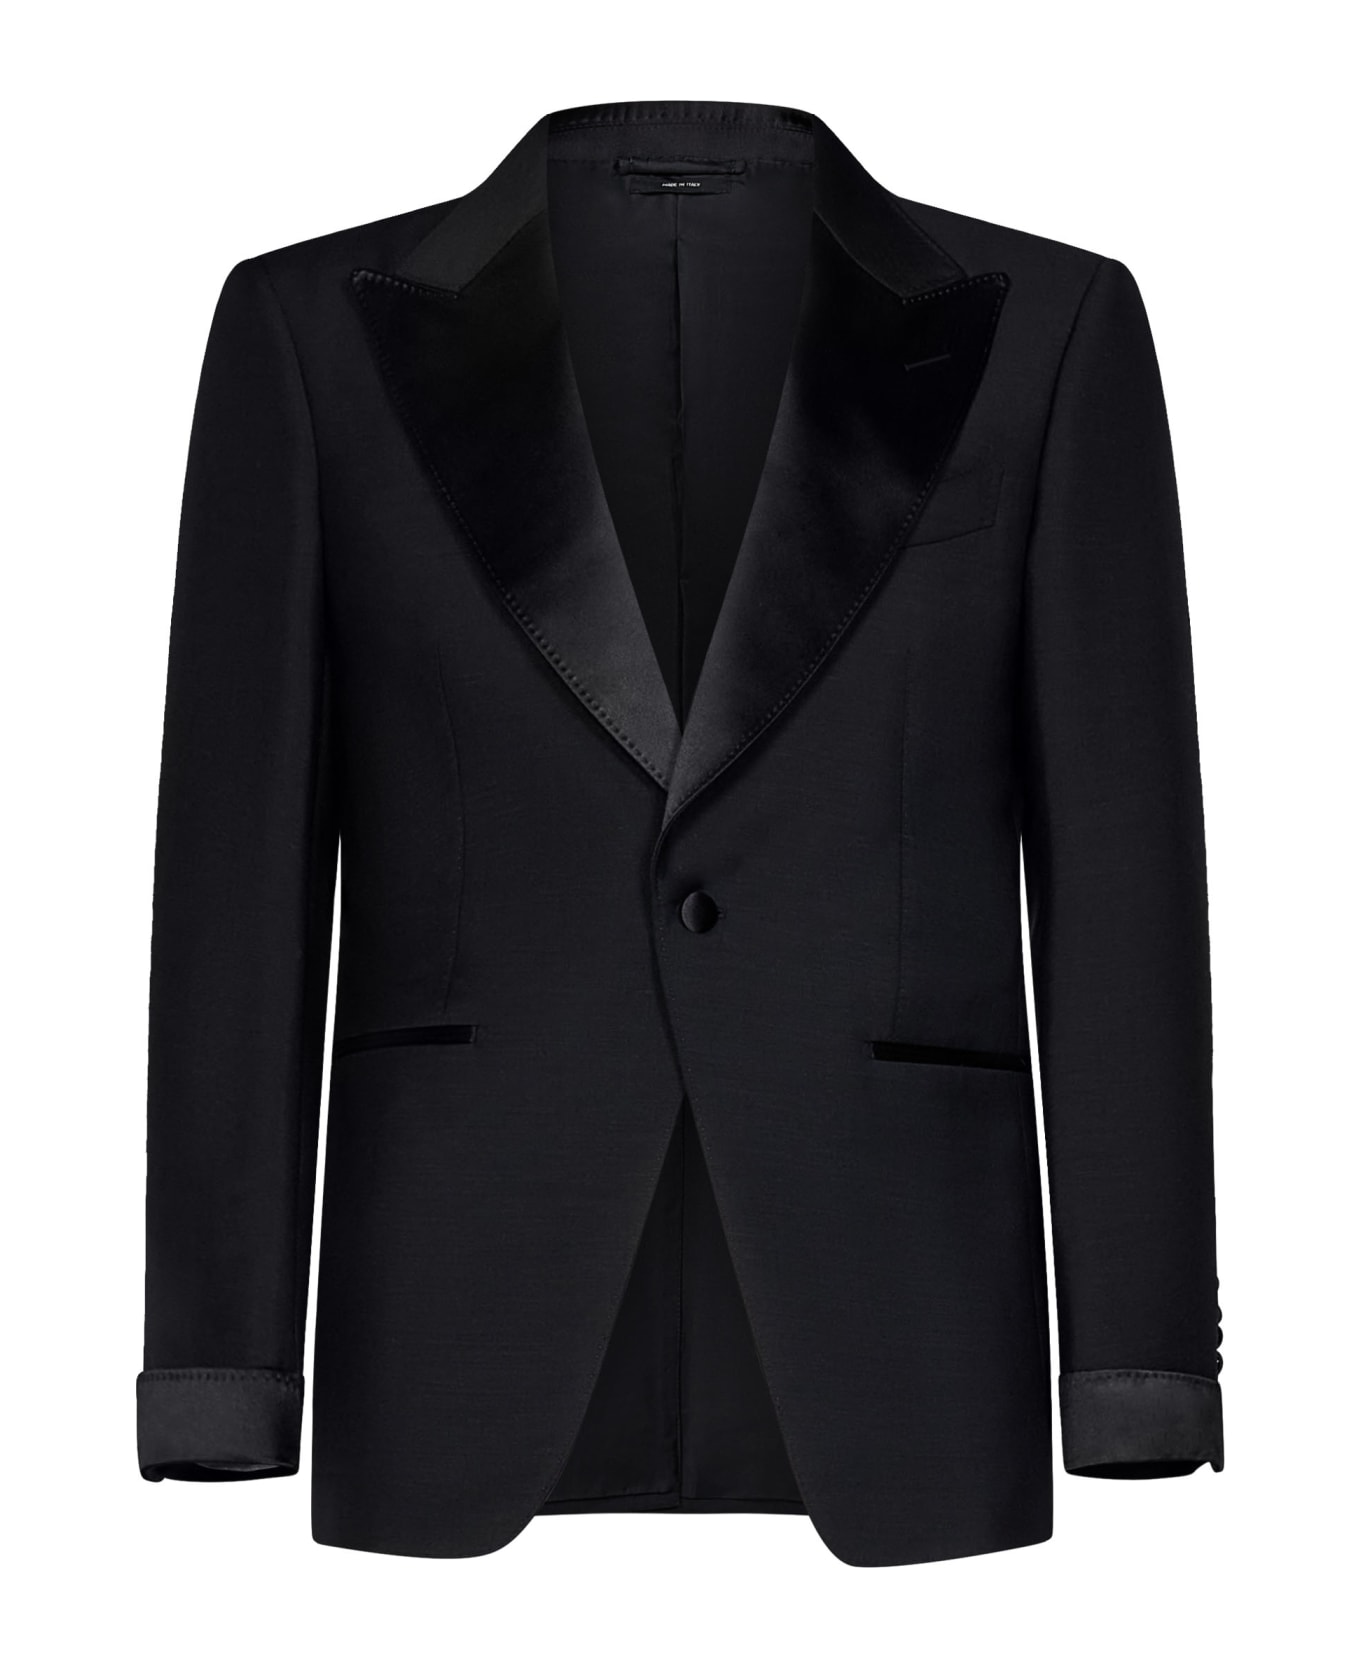 Tom Ford Atticus Suit - Black スーツ